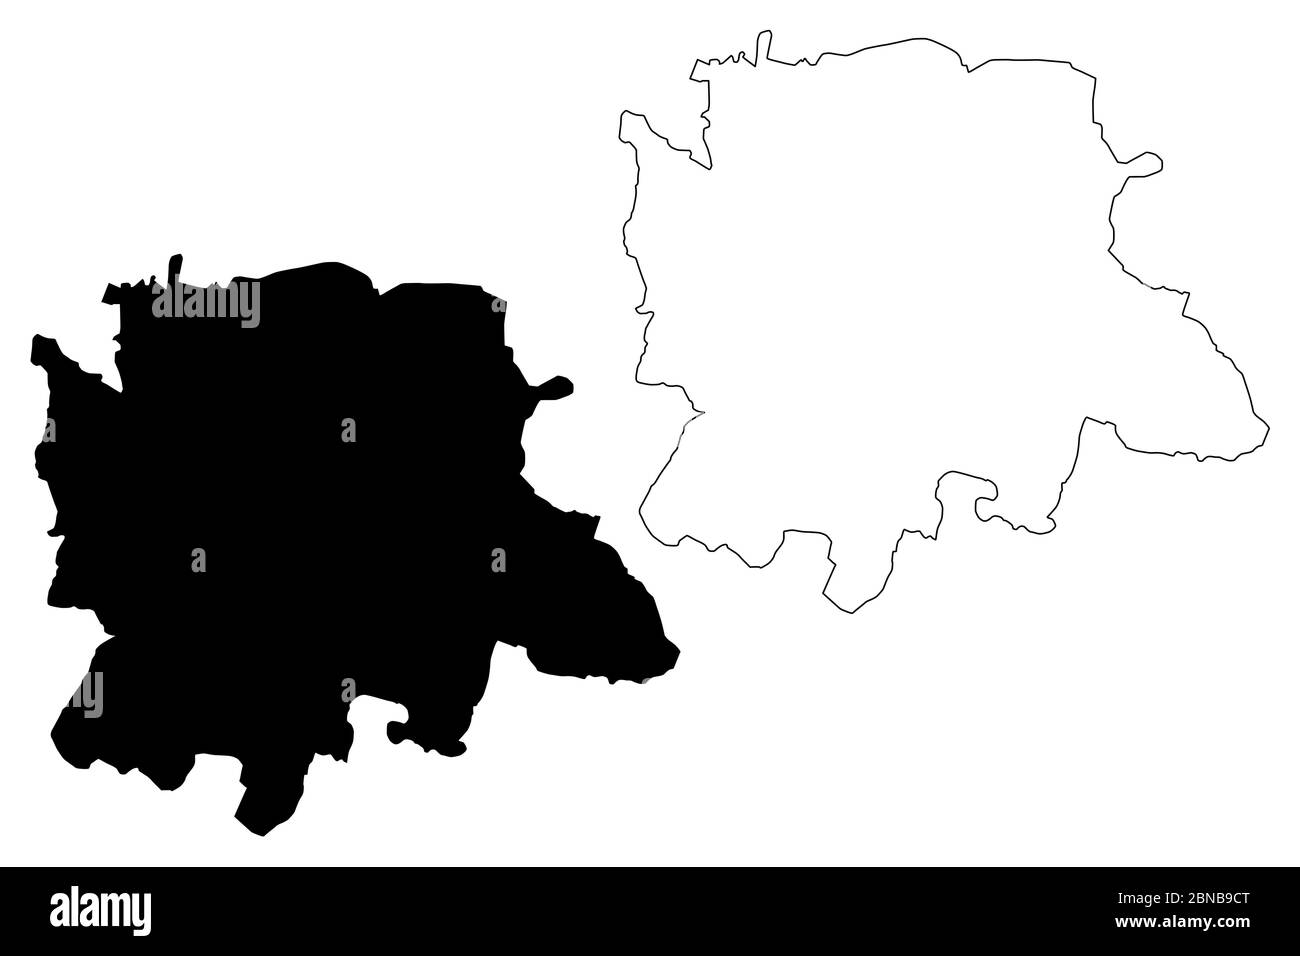 Karnataka Outline Map Set Graphic by davidzydd · Creative Fabrica-saigonsouth.com.vn